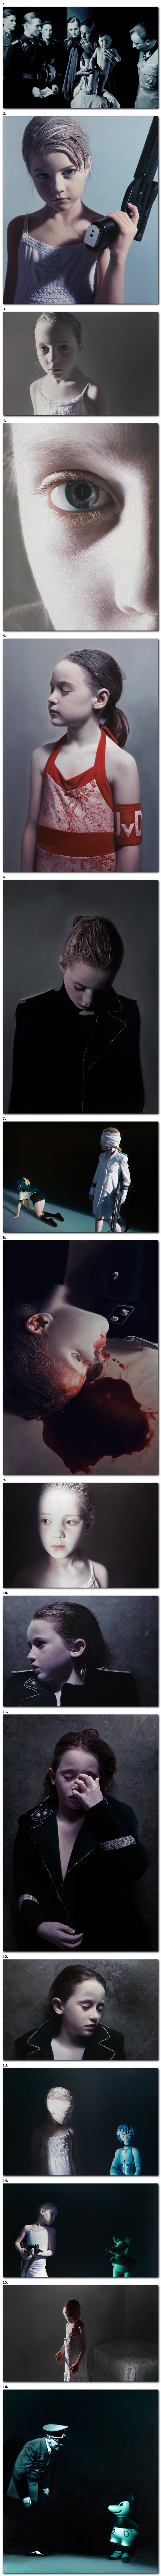 Le murmure des innocents - Gottfried Helnwein